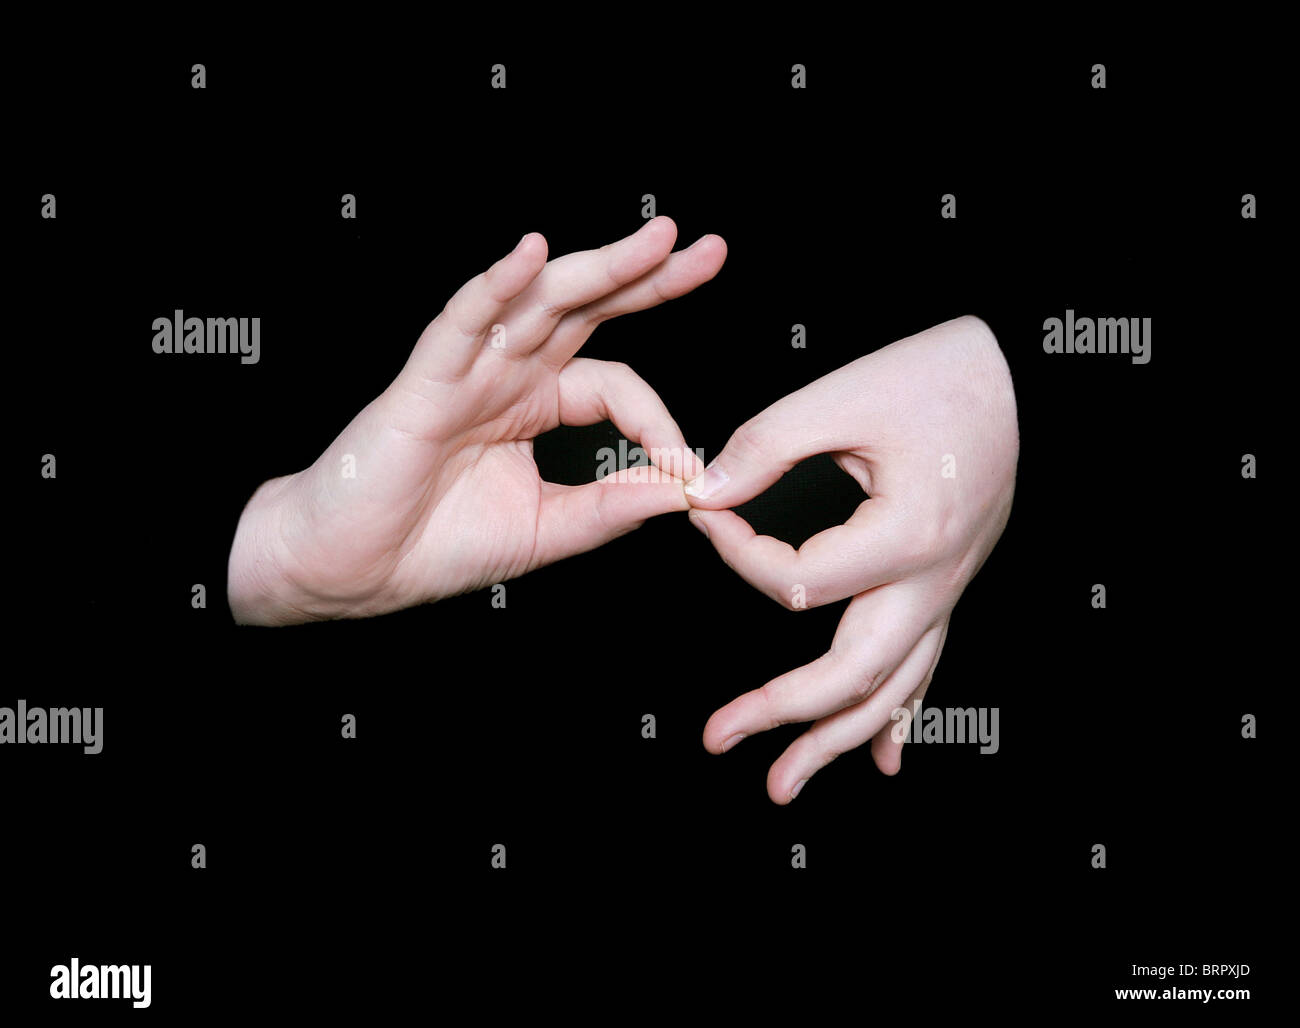 L'interprétation en langue des signes signes sur un fond noir Banque D'Images